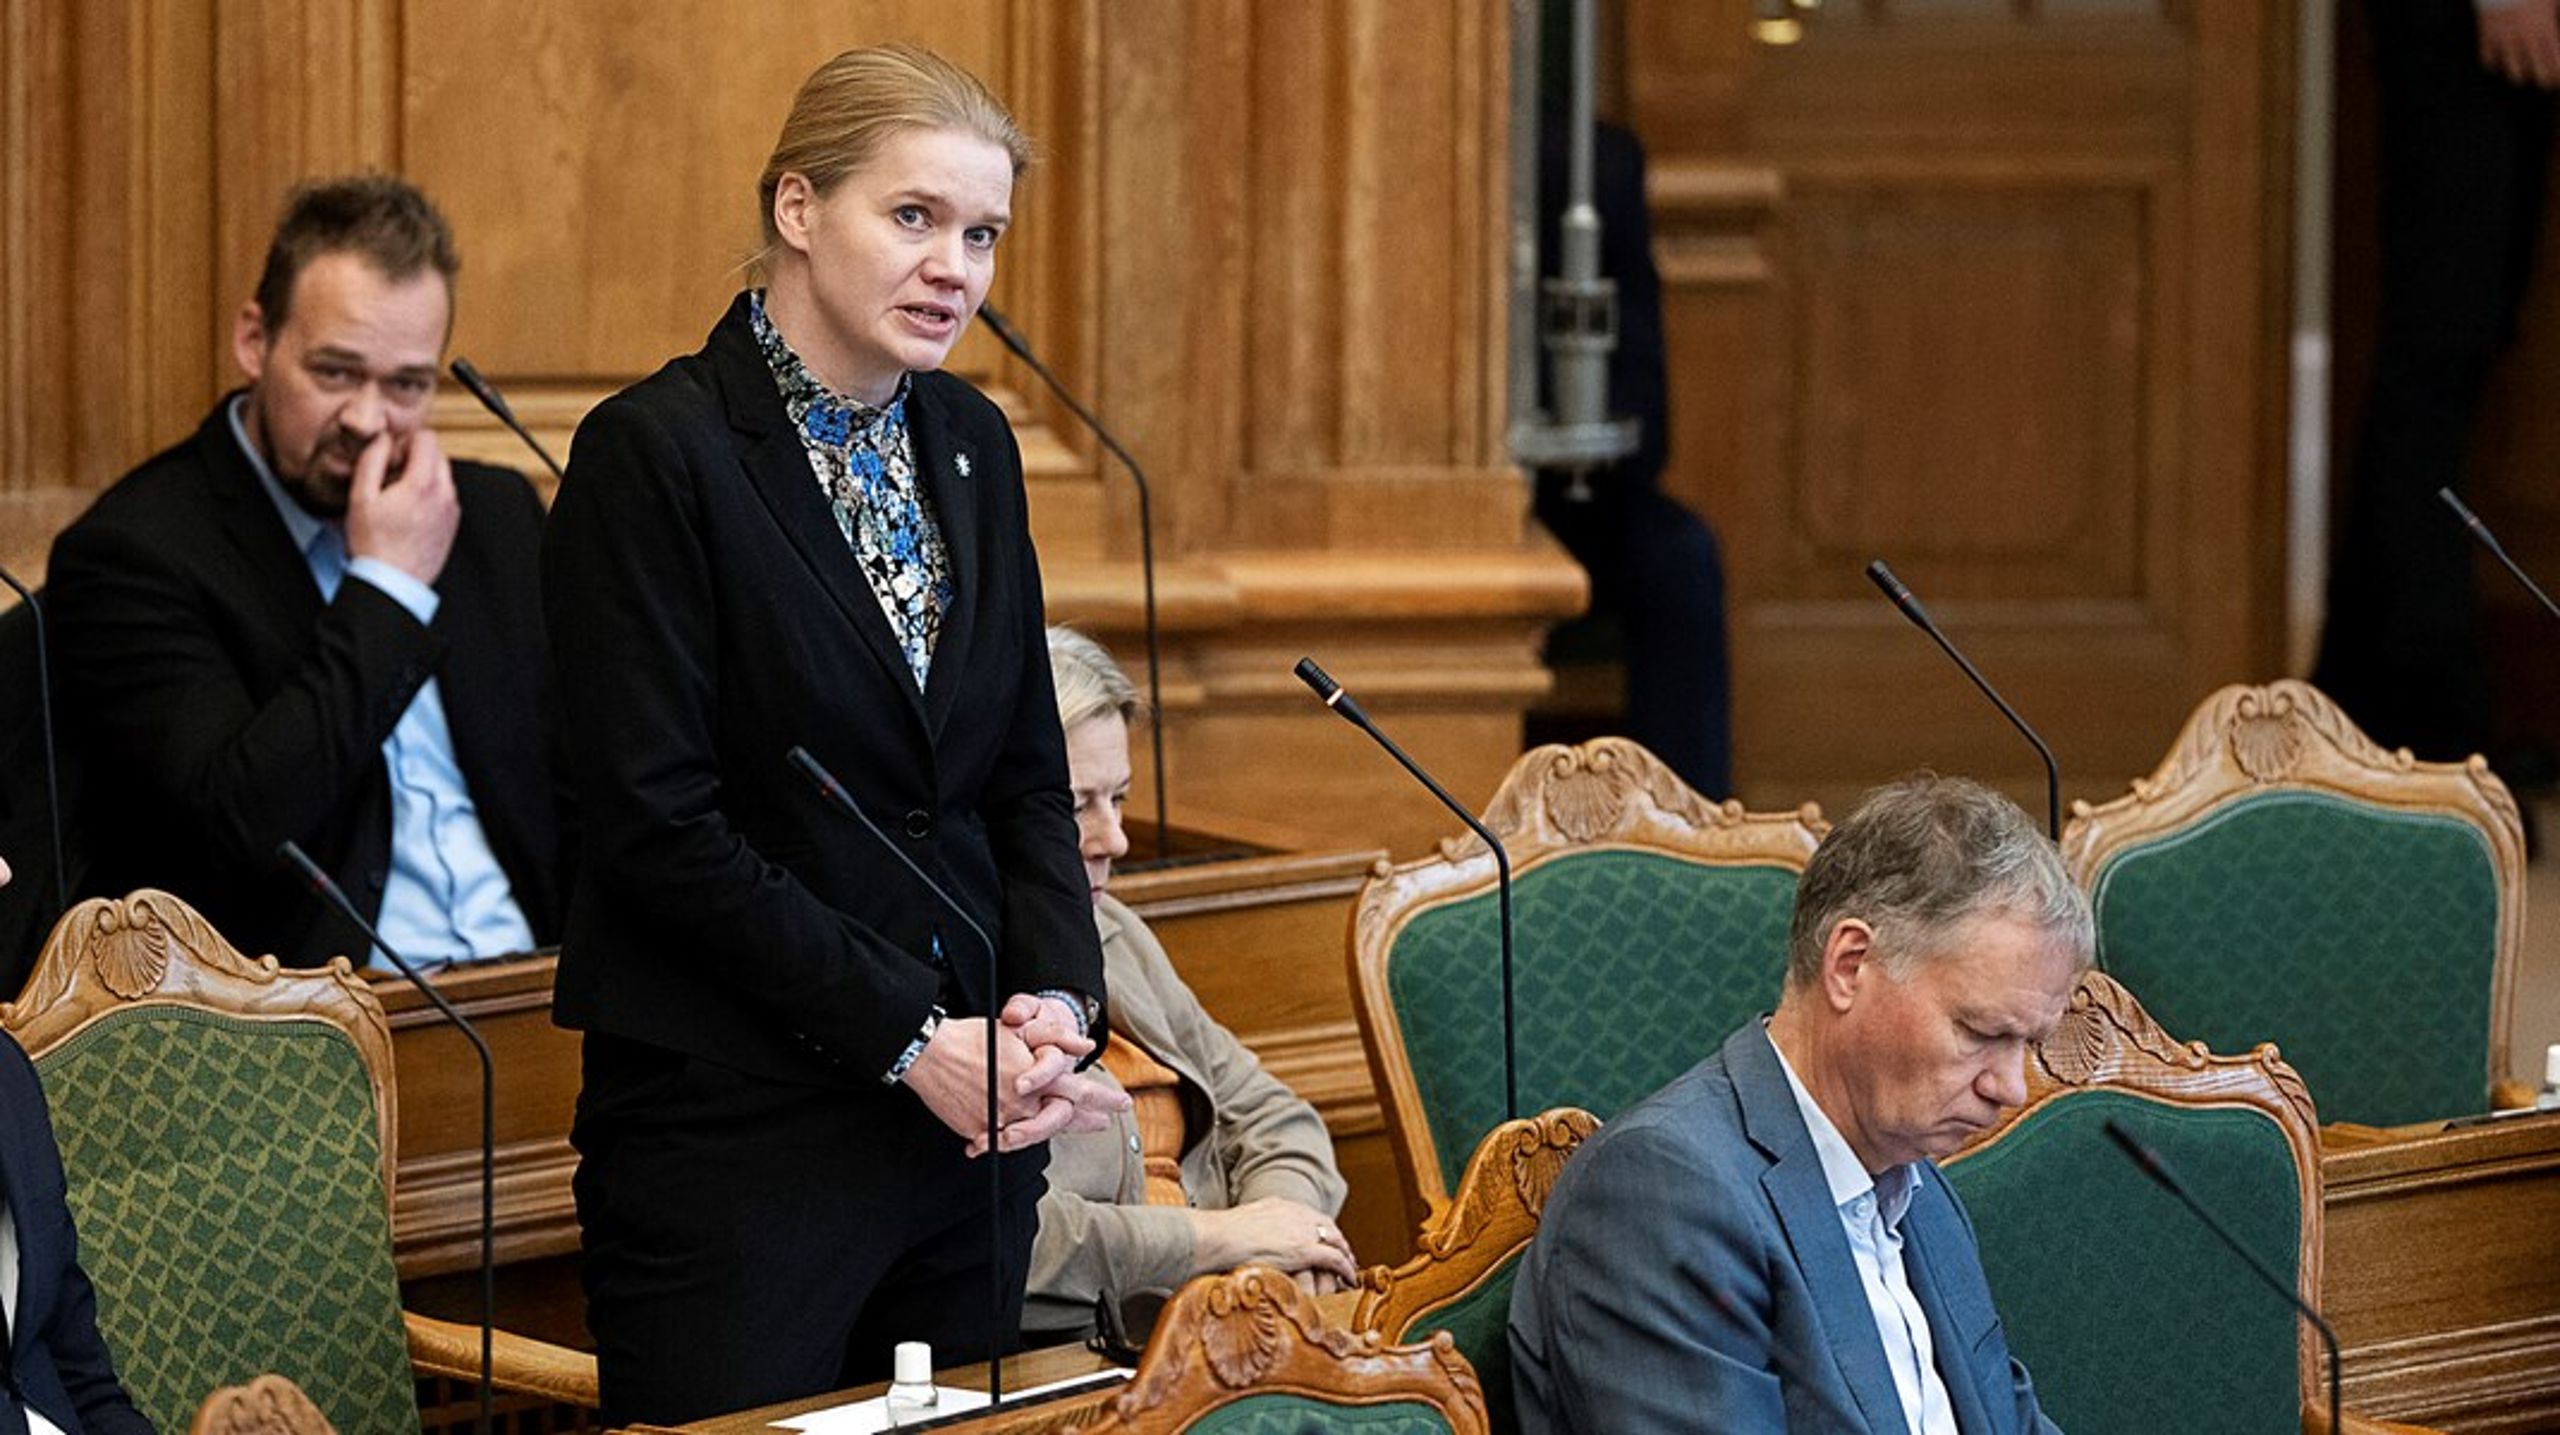 Marlene Harpsøe har siddet i Folketinget for Dansk Folkeparti fra 2007 til 2011 og igen fra 2015 til 2019. Nu er hun tilbage som repræsentant for Danmarksdemokraterne og ældreområdet som en del af sit ordførerportefølje.